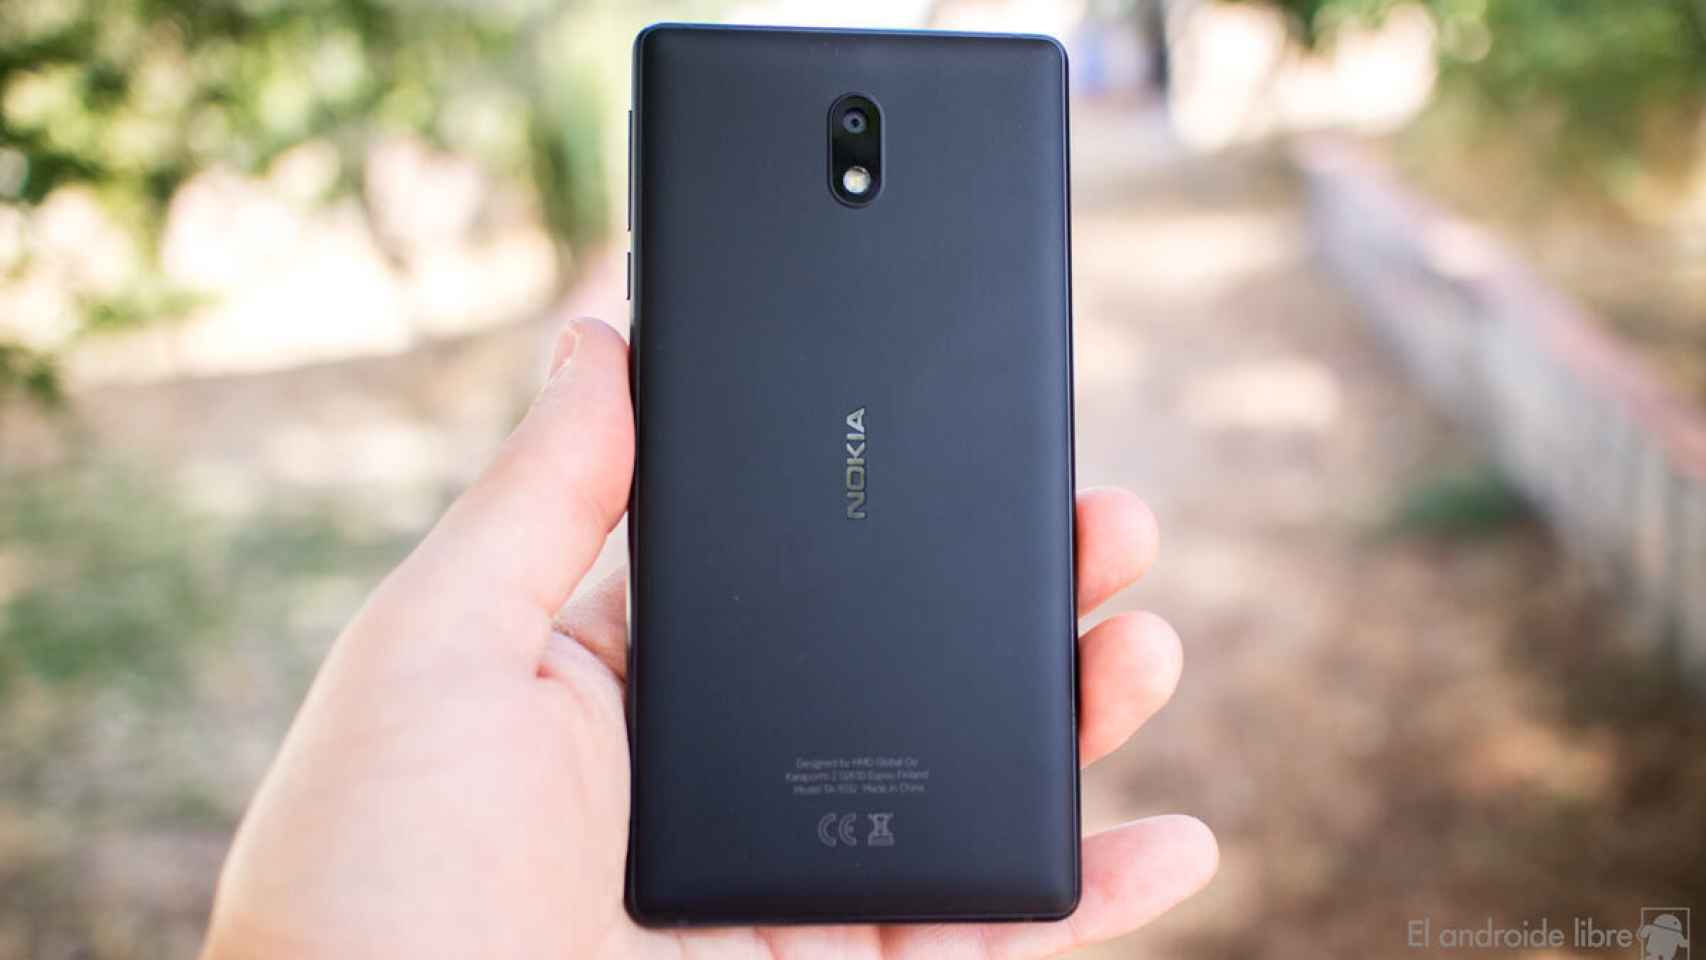 Es oficial, el económico Nokia 3 se actualizará a Android 8.0